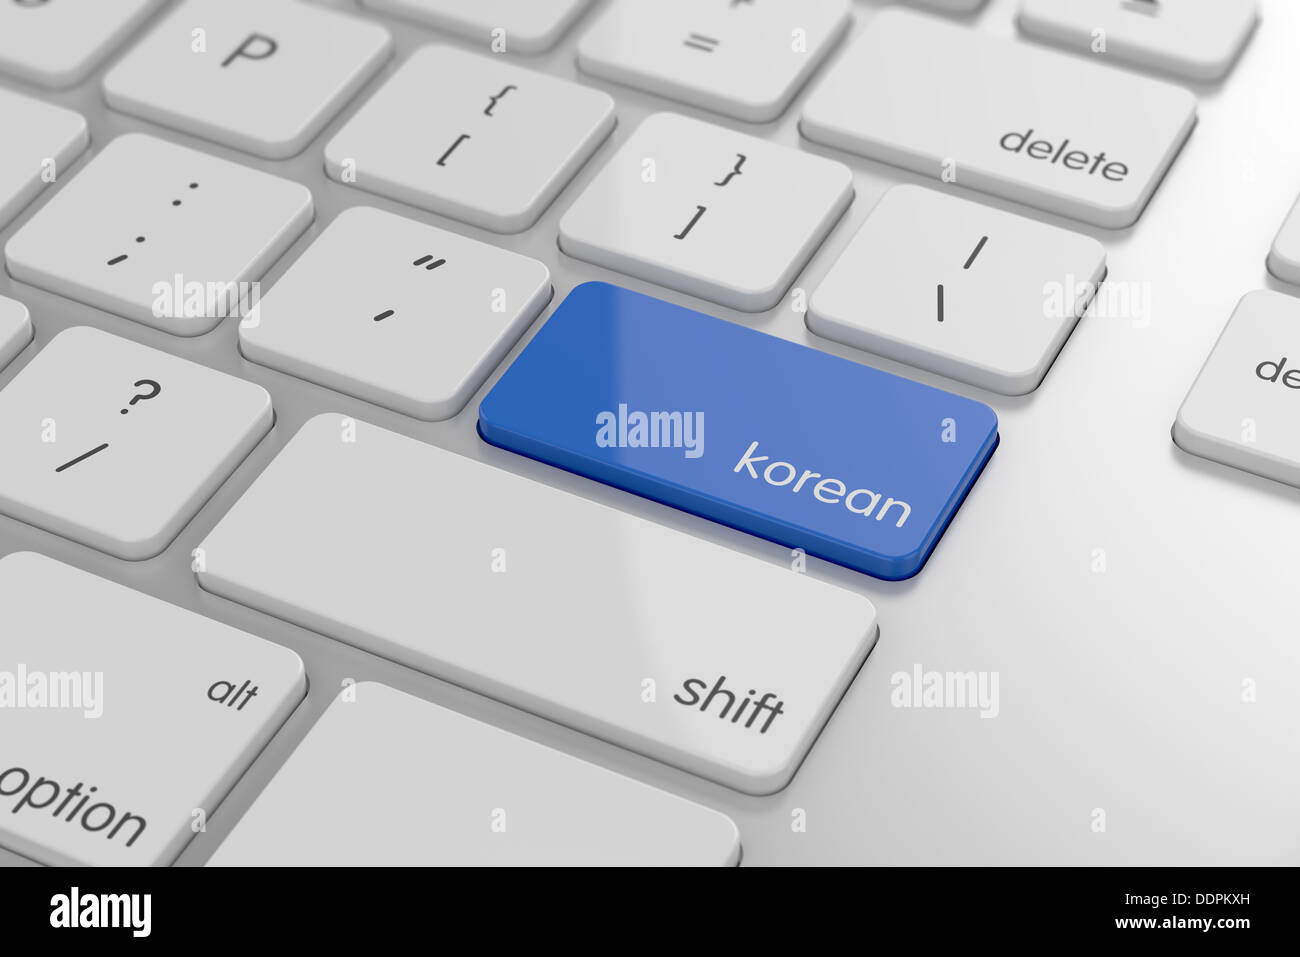 Traduzione coreana immagini e fotografie stock ad alta risoluzione - Alamy